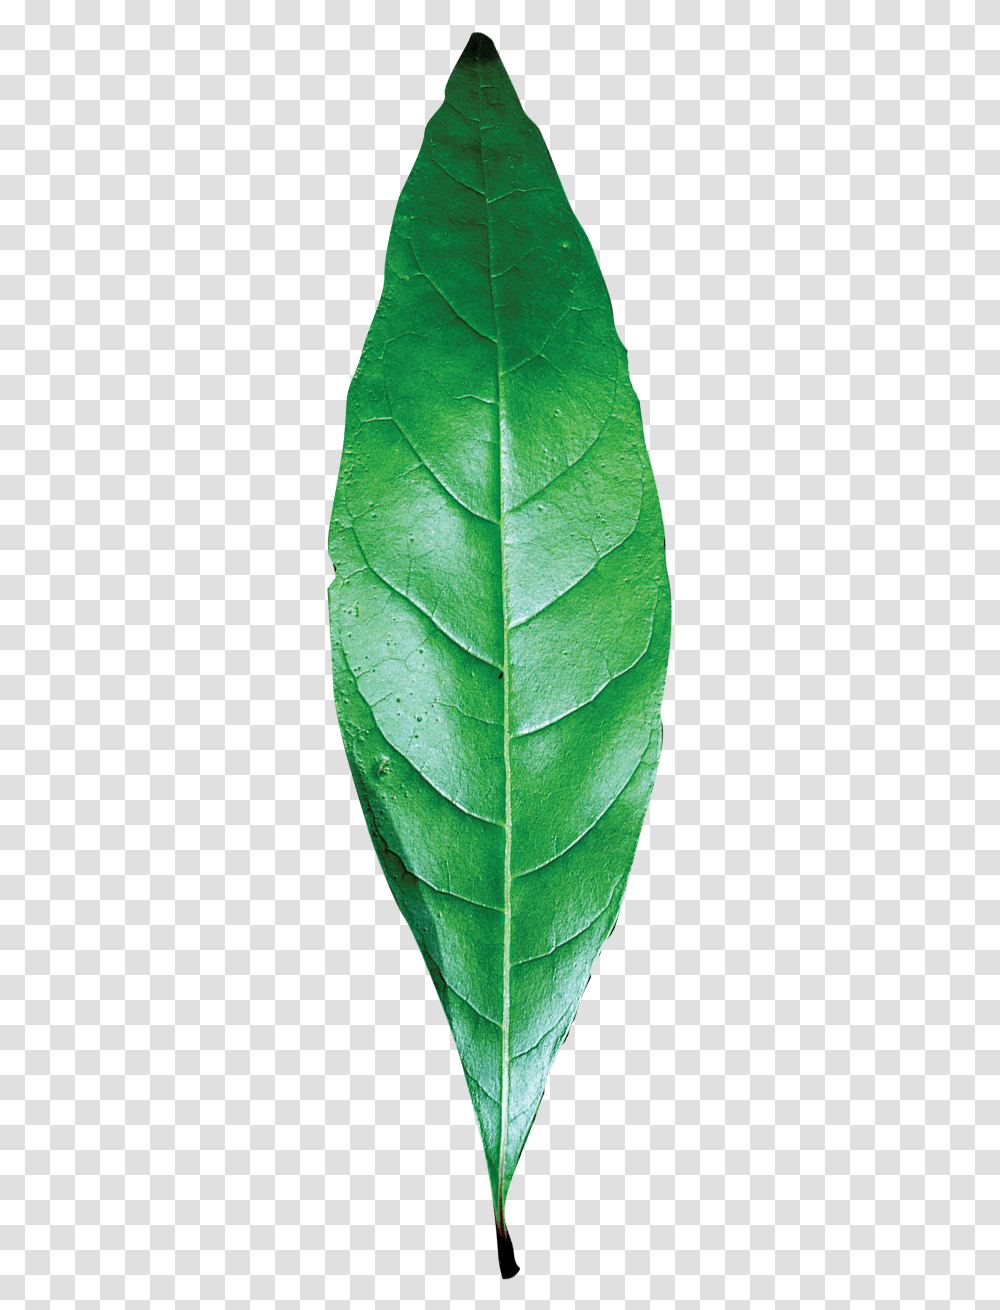 Leaf Texture Single Green Leaf, Plant, Veins, Pineapple, Fruit Transparent Png